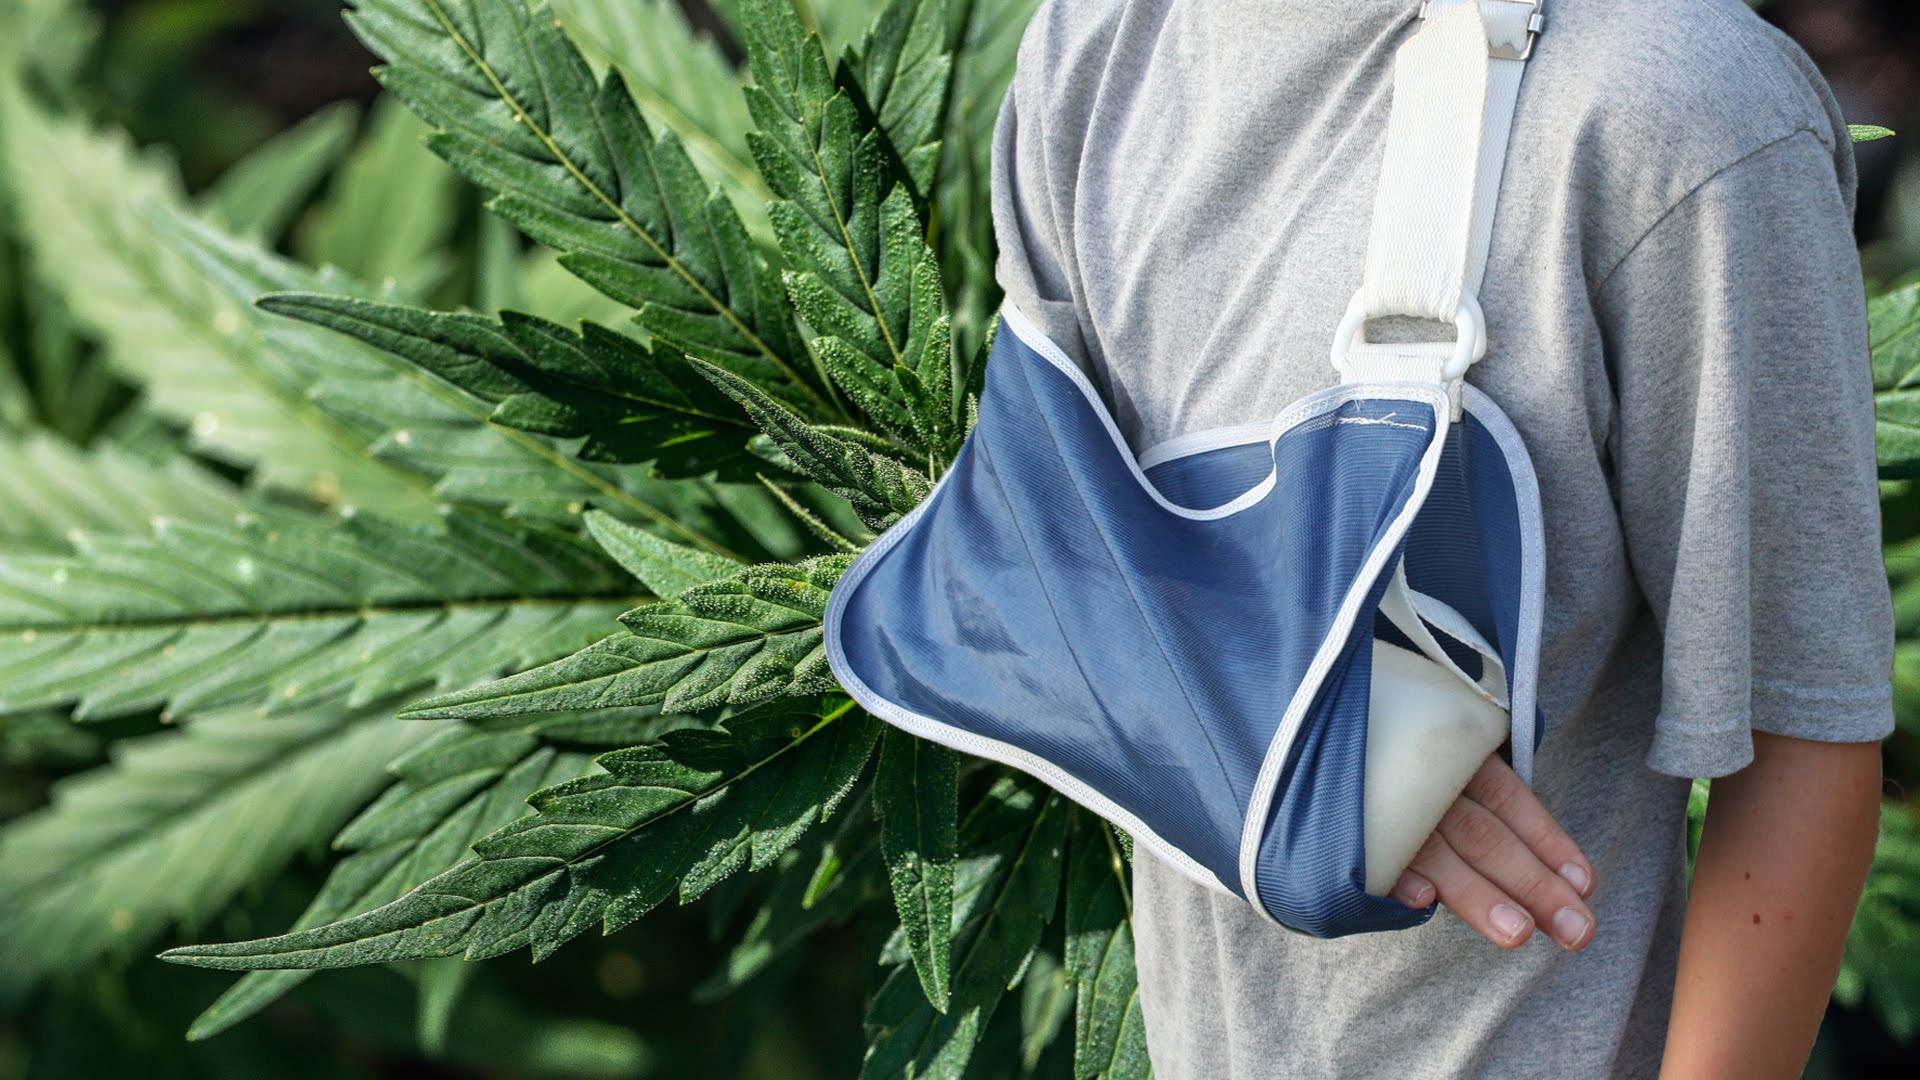 cannabis heals broken bones